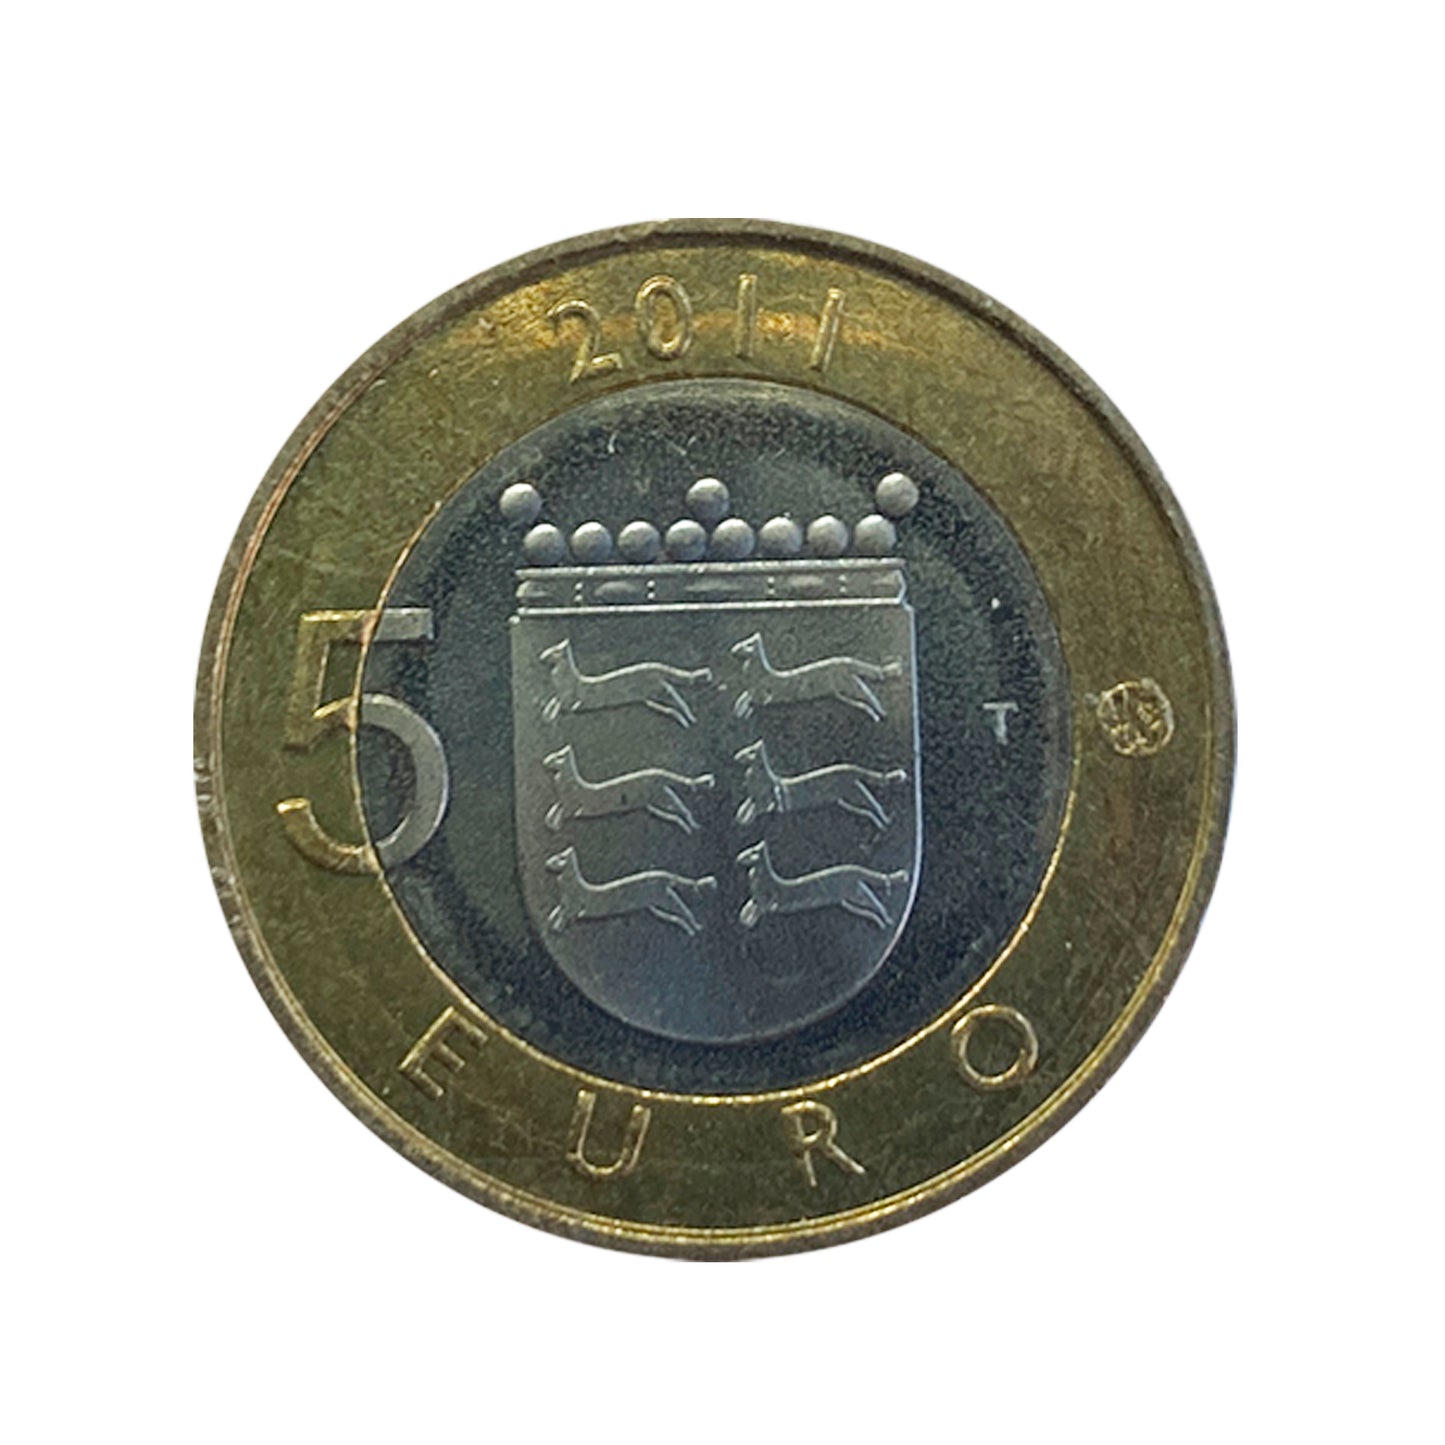 Finlandia - Moneda 5 euros en cuproníquel 2011 - Ostrobotnia